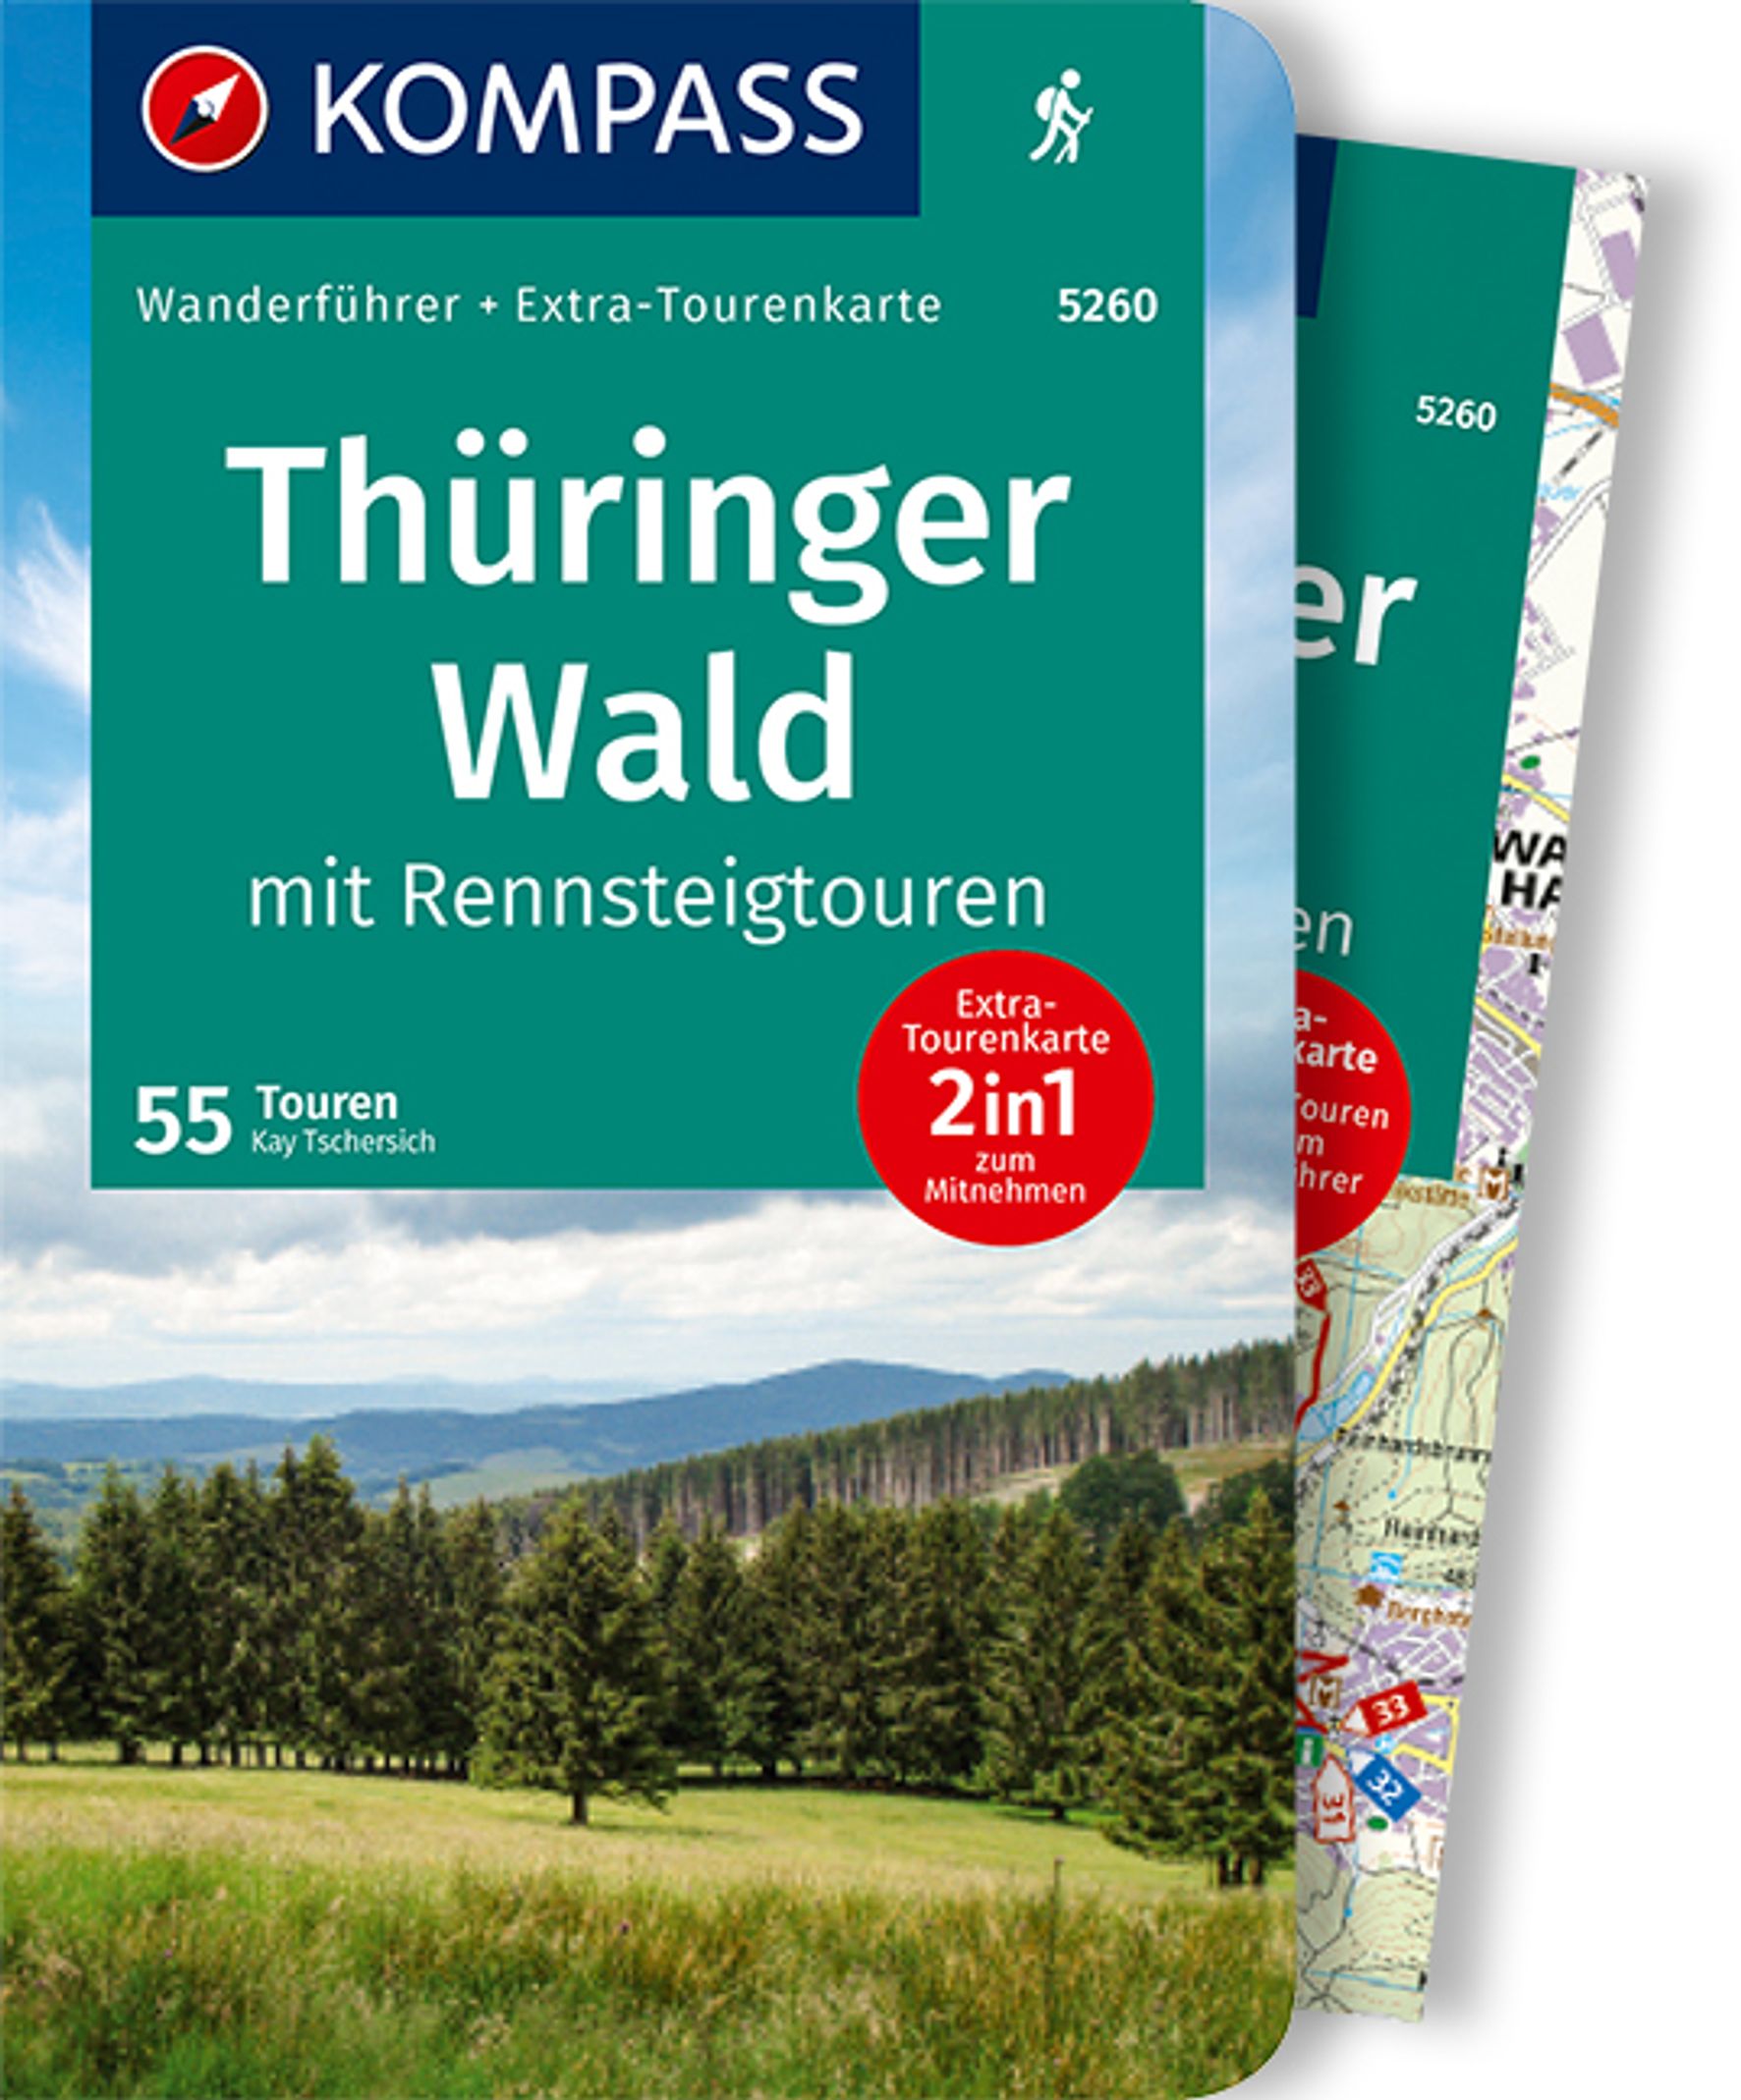 MAIRDUMONT Thüringer Wald mit Rennsteigtouren, 55 Touren mit Extra-Tourenkarte